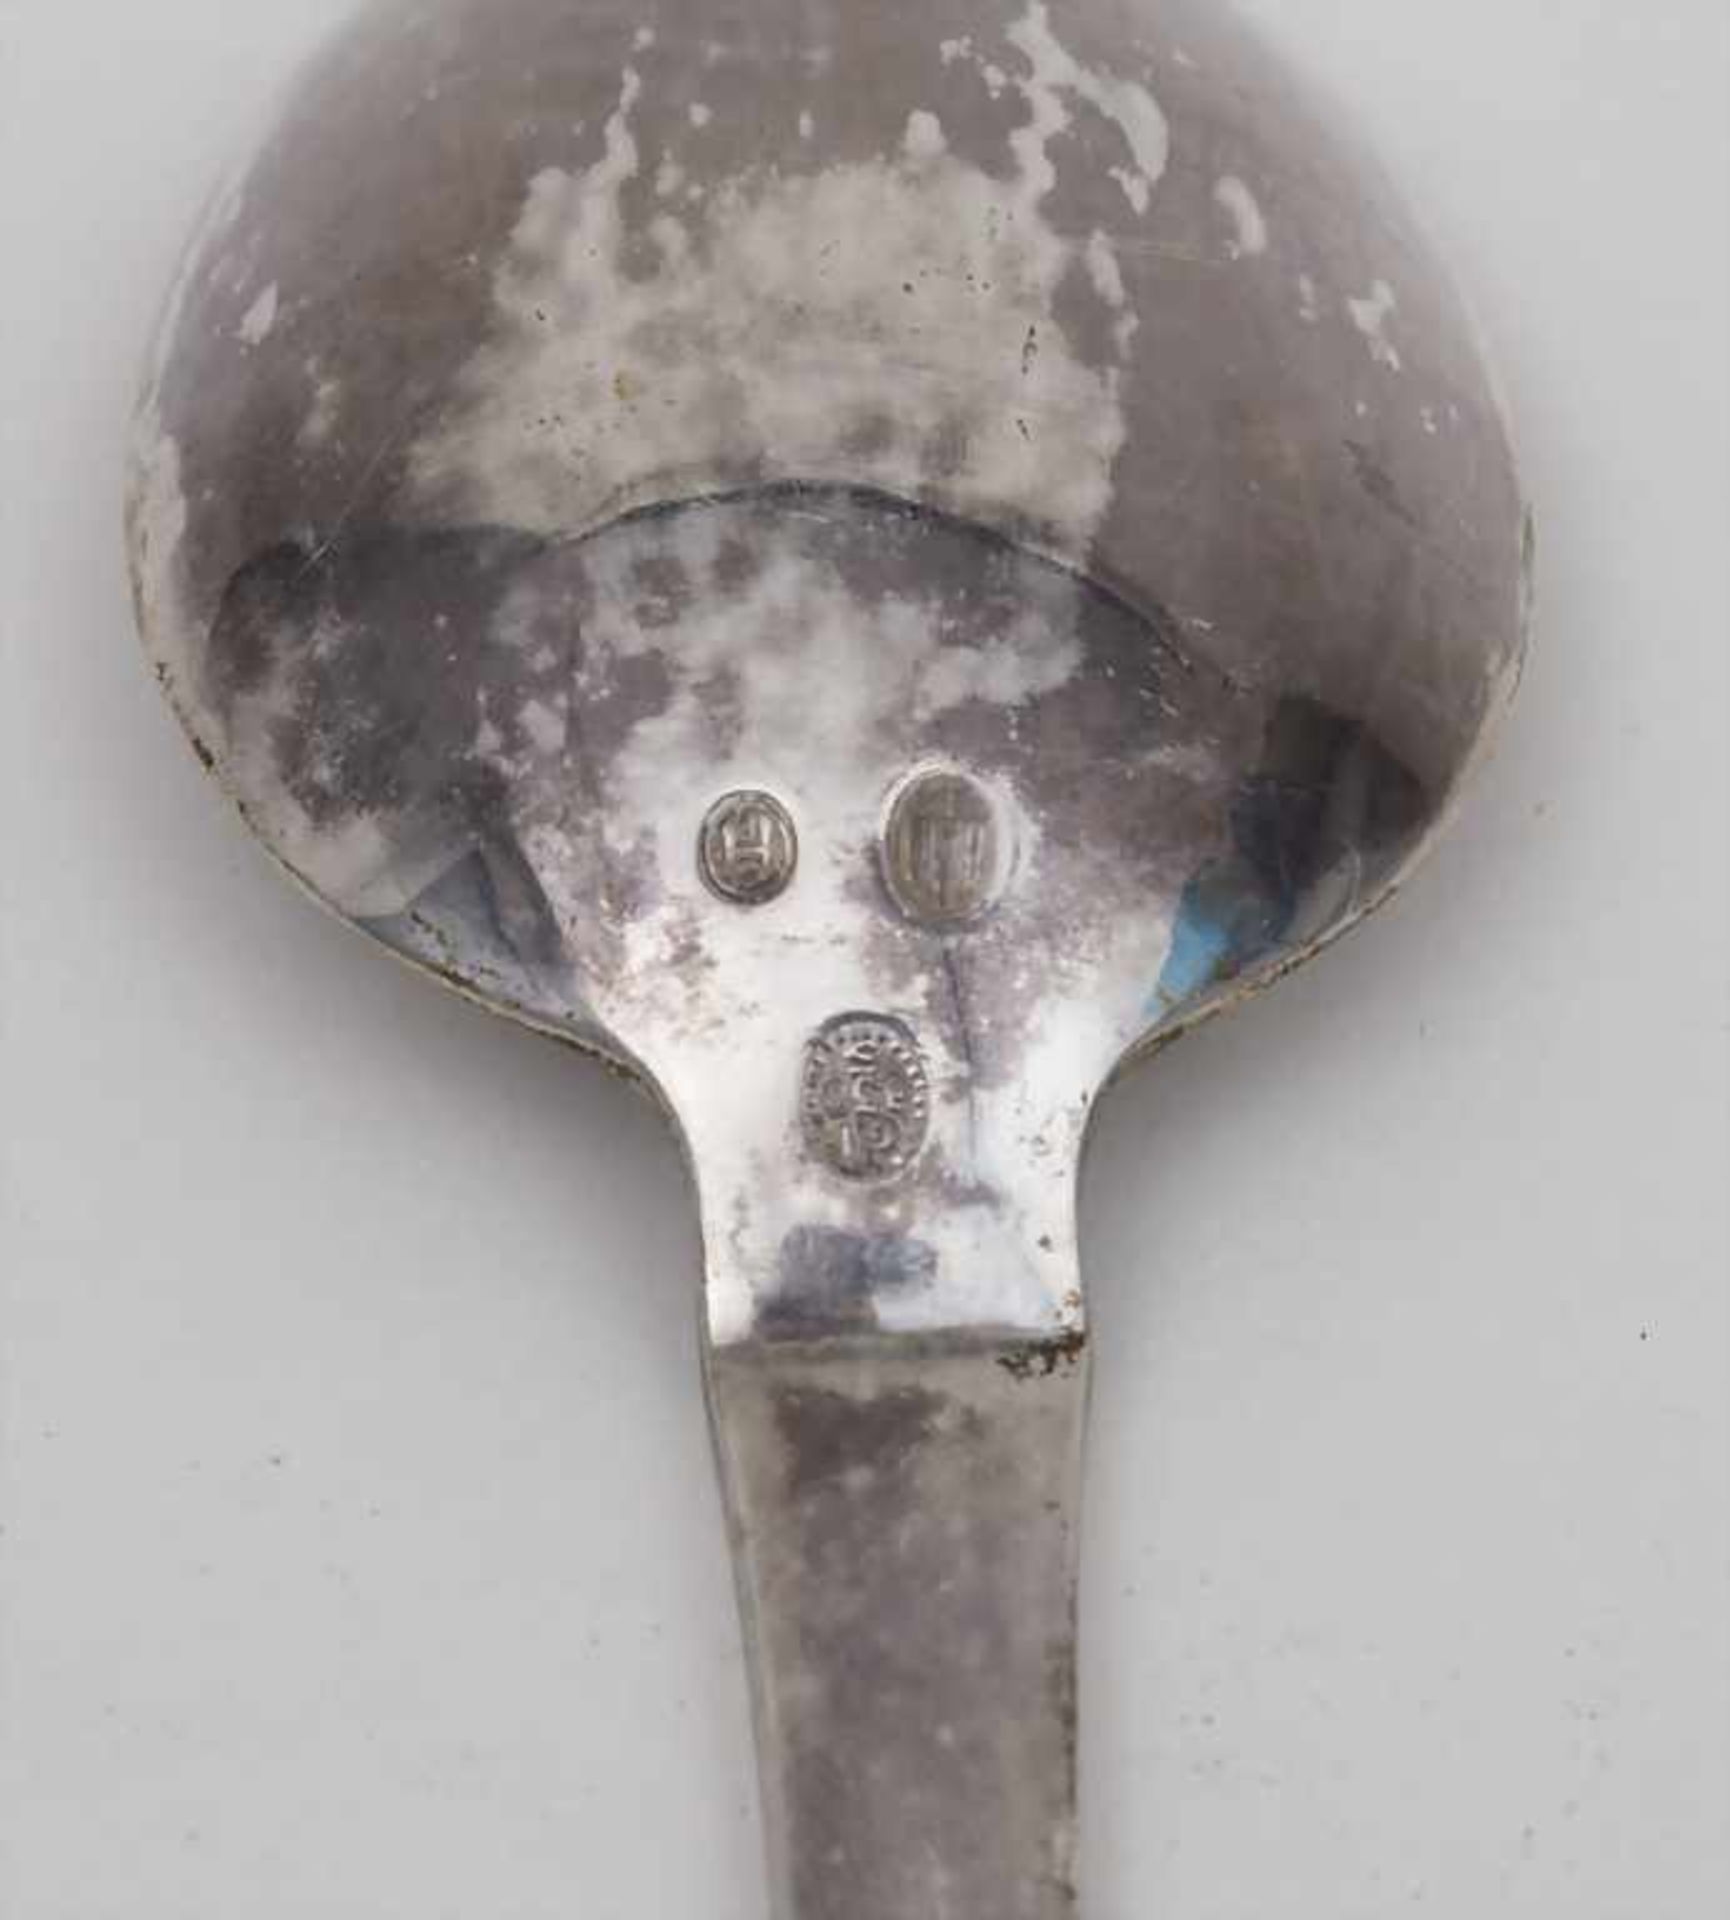 Servierlöffel 'Beaded' / A serving spoon 'Beaded', Christian F. Heise für Georg Jensen, - Bild 2 aus 2